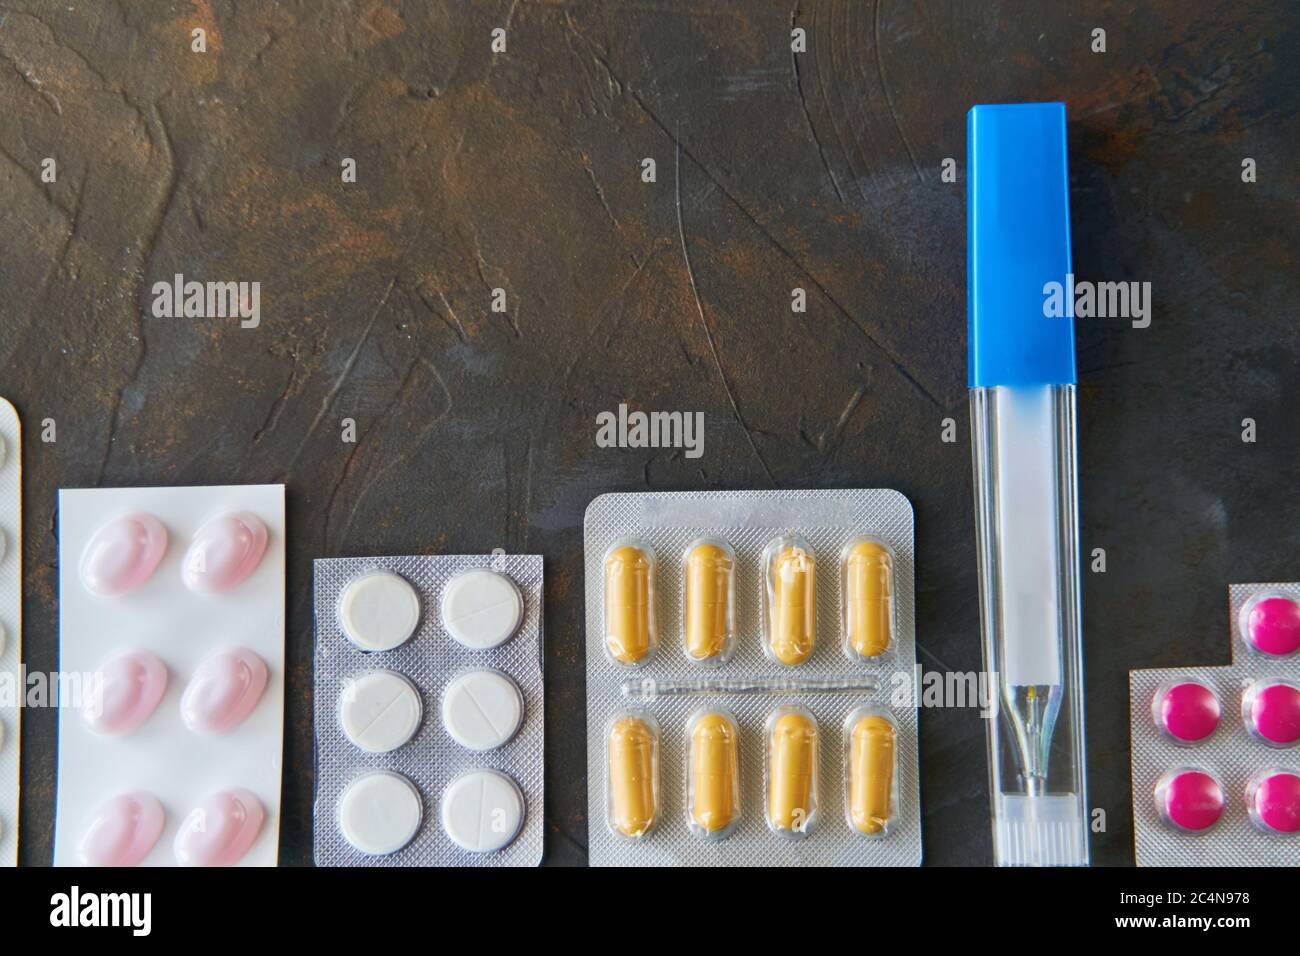 Pillole capsule medicina salute su sfondo scuro, vista dall'alto Foto Stock